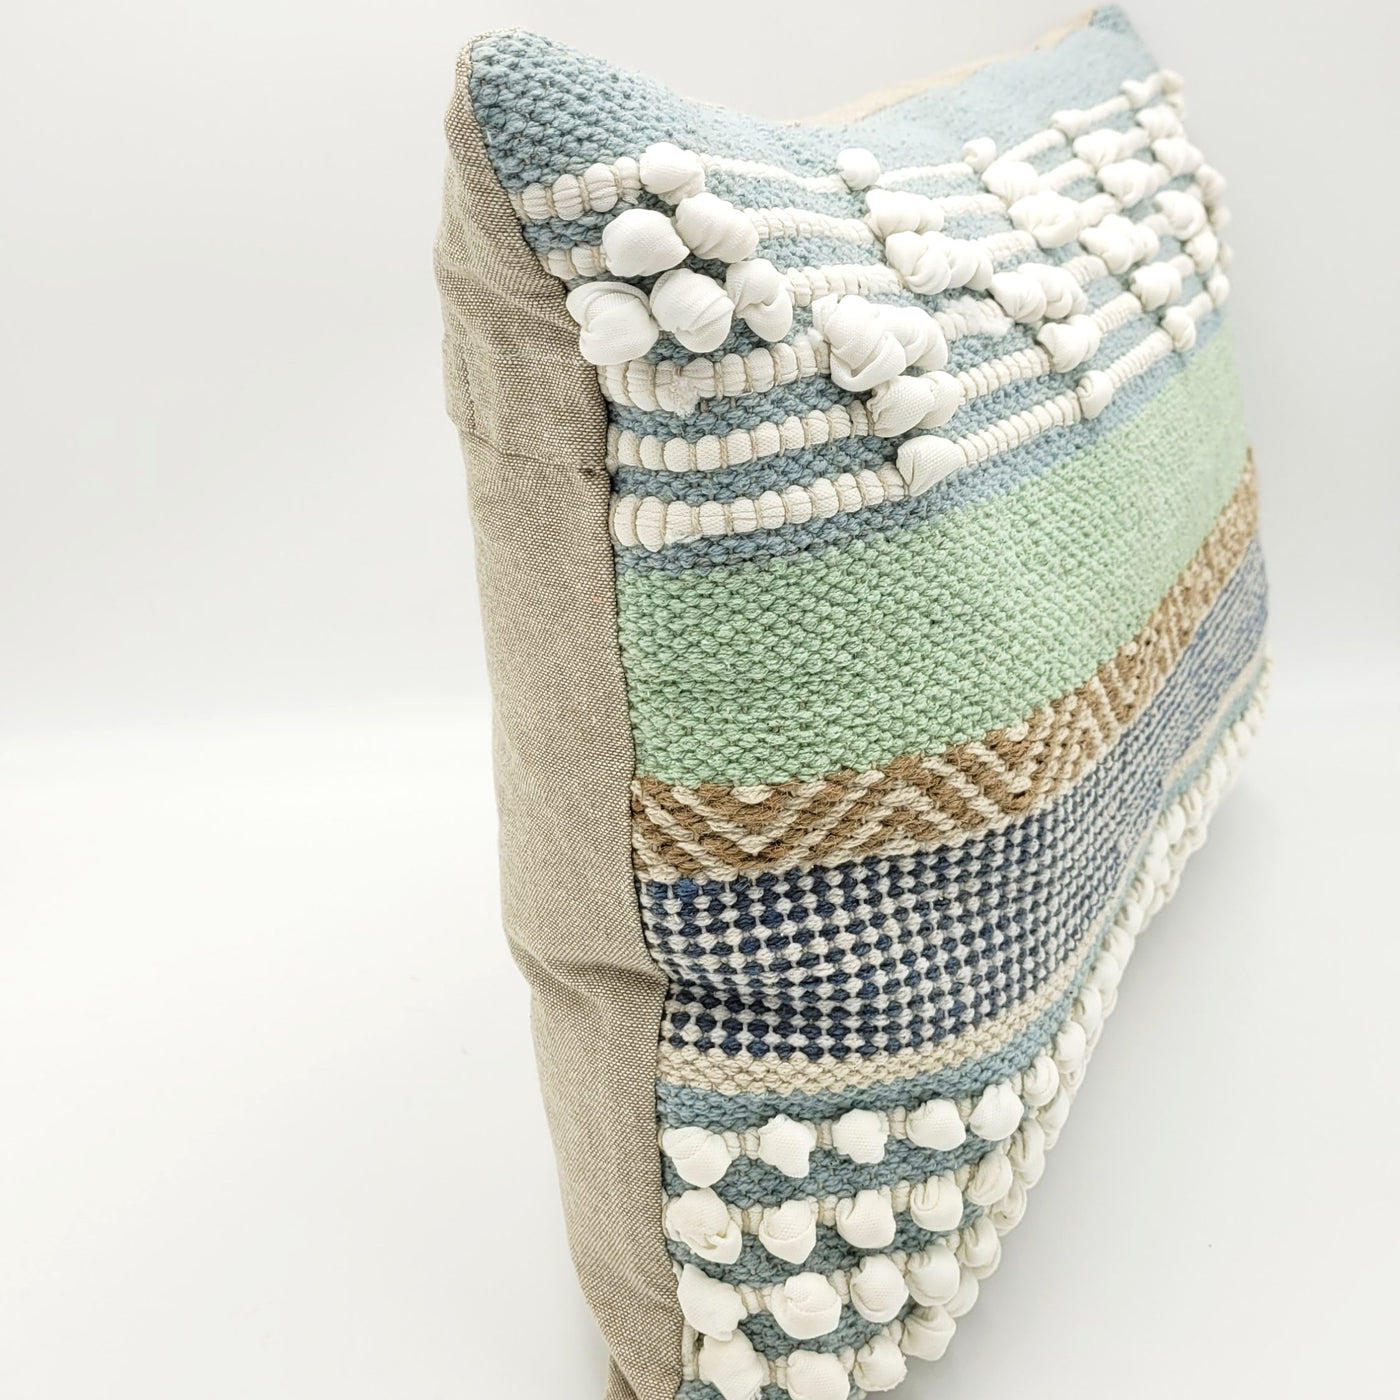 Cojin de Suelo de 45x45 cms, hecho con 100% algodon con rayas tejidas en  tonos azules y con un relleno también de algodón. — Cojines Para Jardin